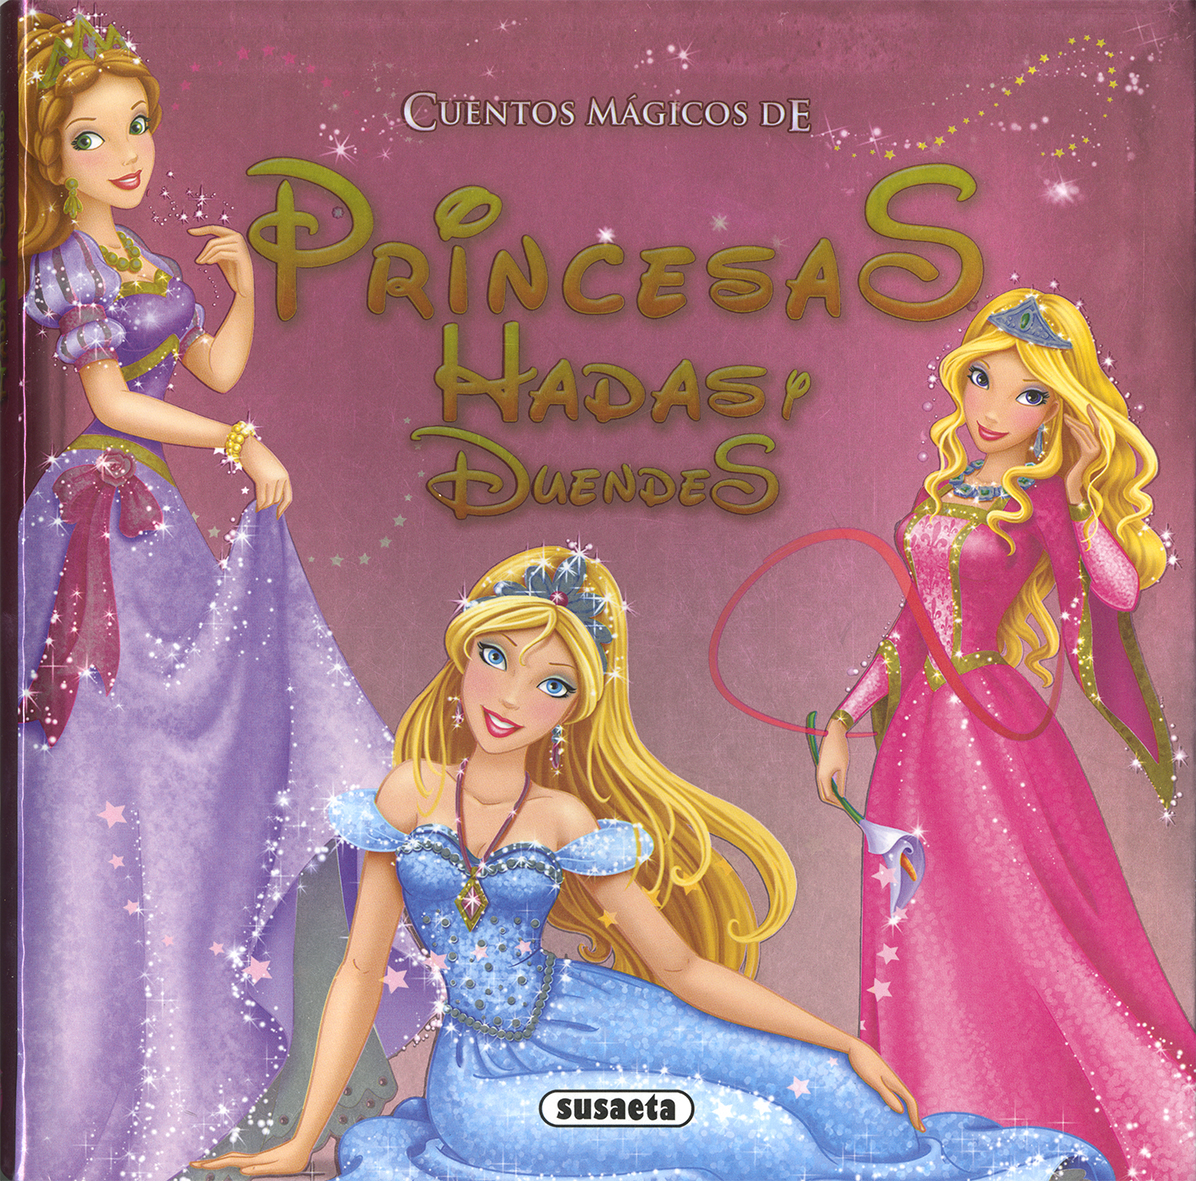 Cuentos mgicos de princesas, hadas y duendes